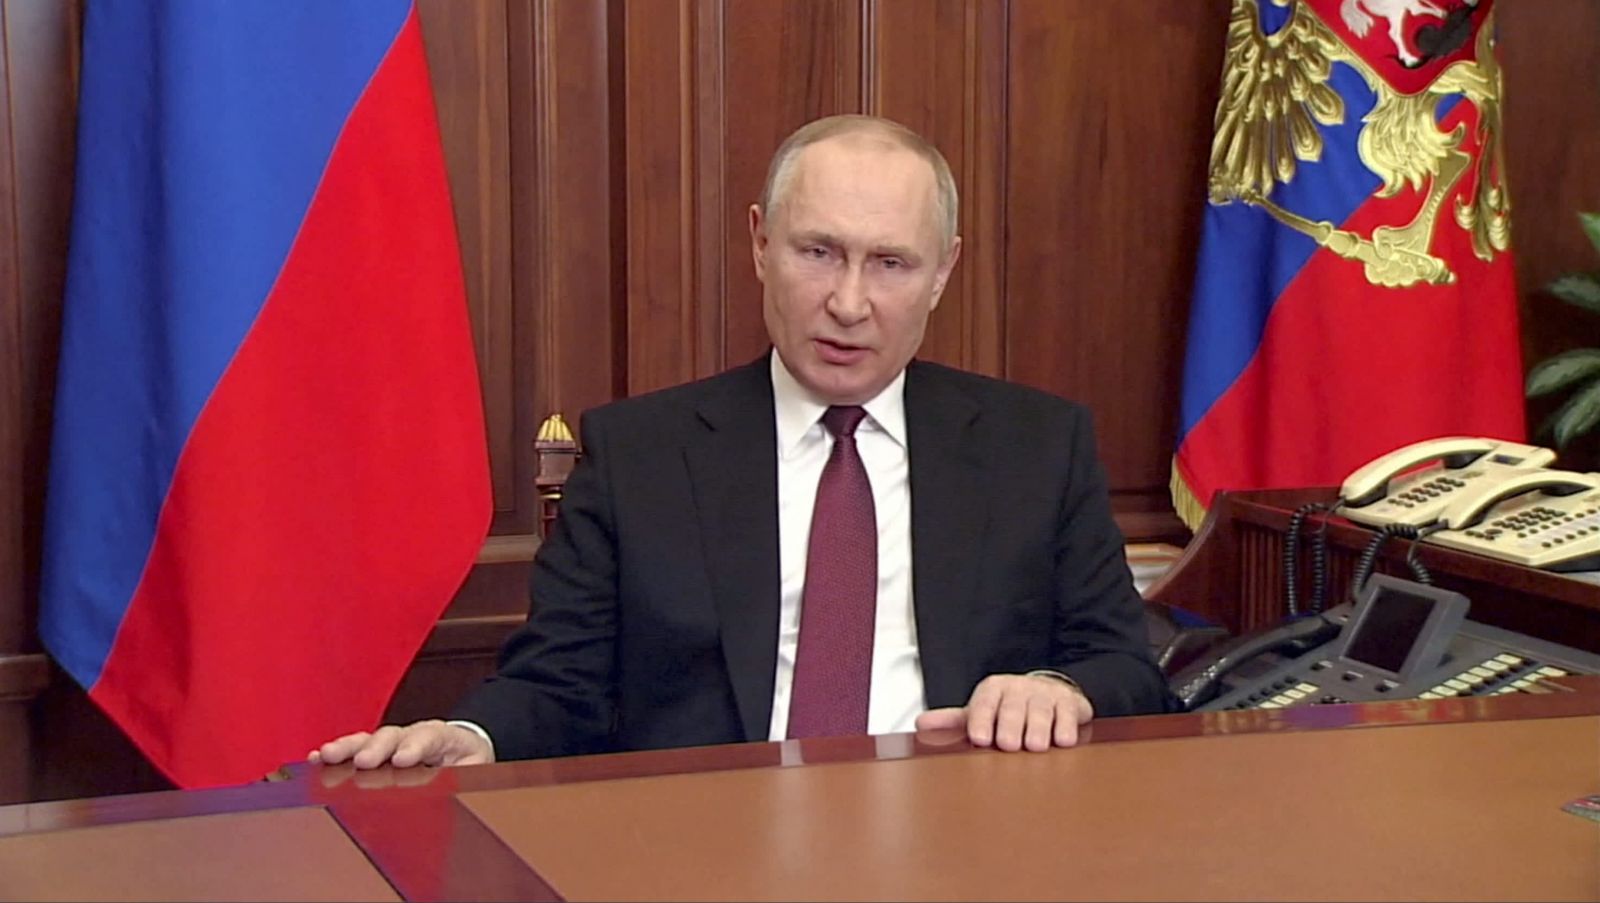 Tổng thống Vladimir Putin tuyên bố tấn công Ukraine vào sáng sớm thứ Năm (24/2) theo giờ địa phương